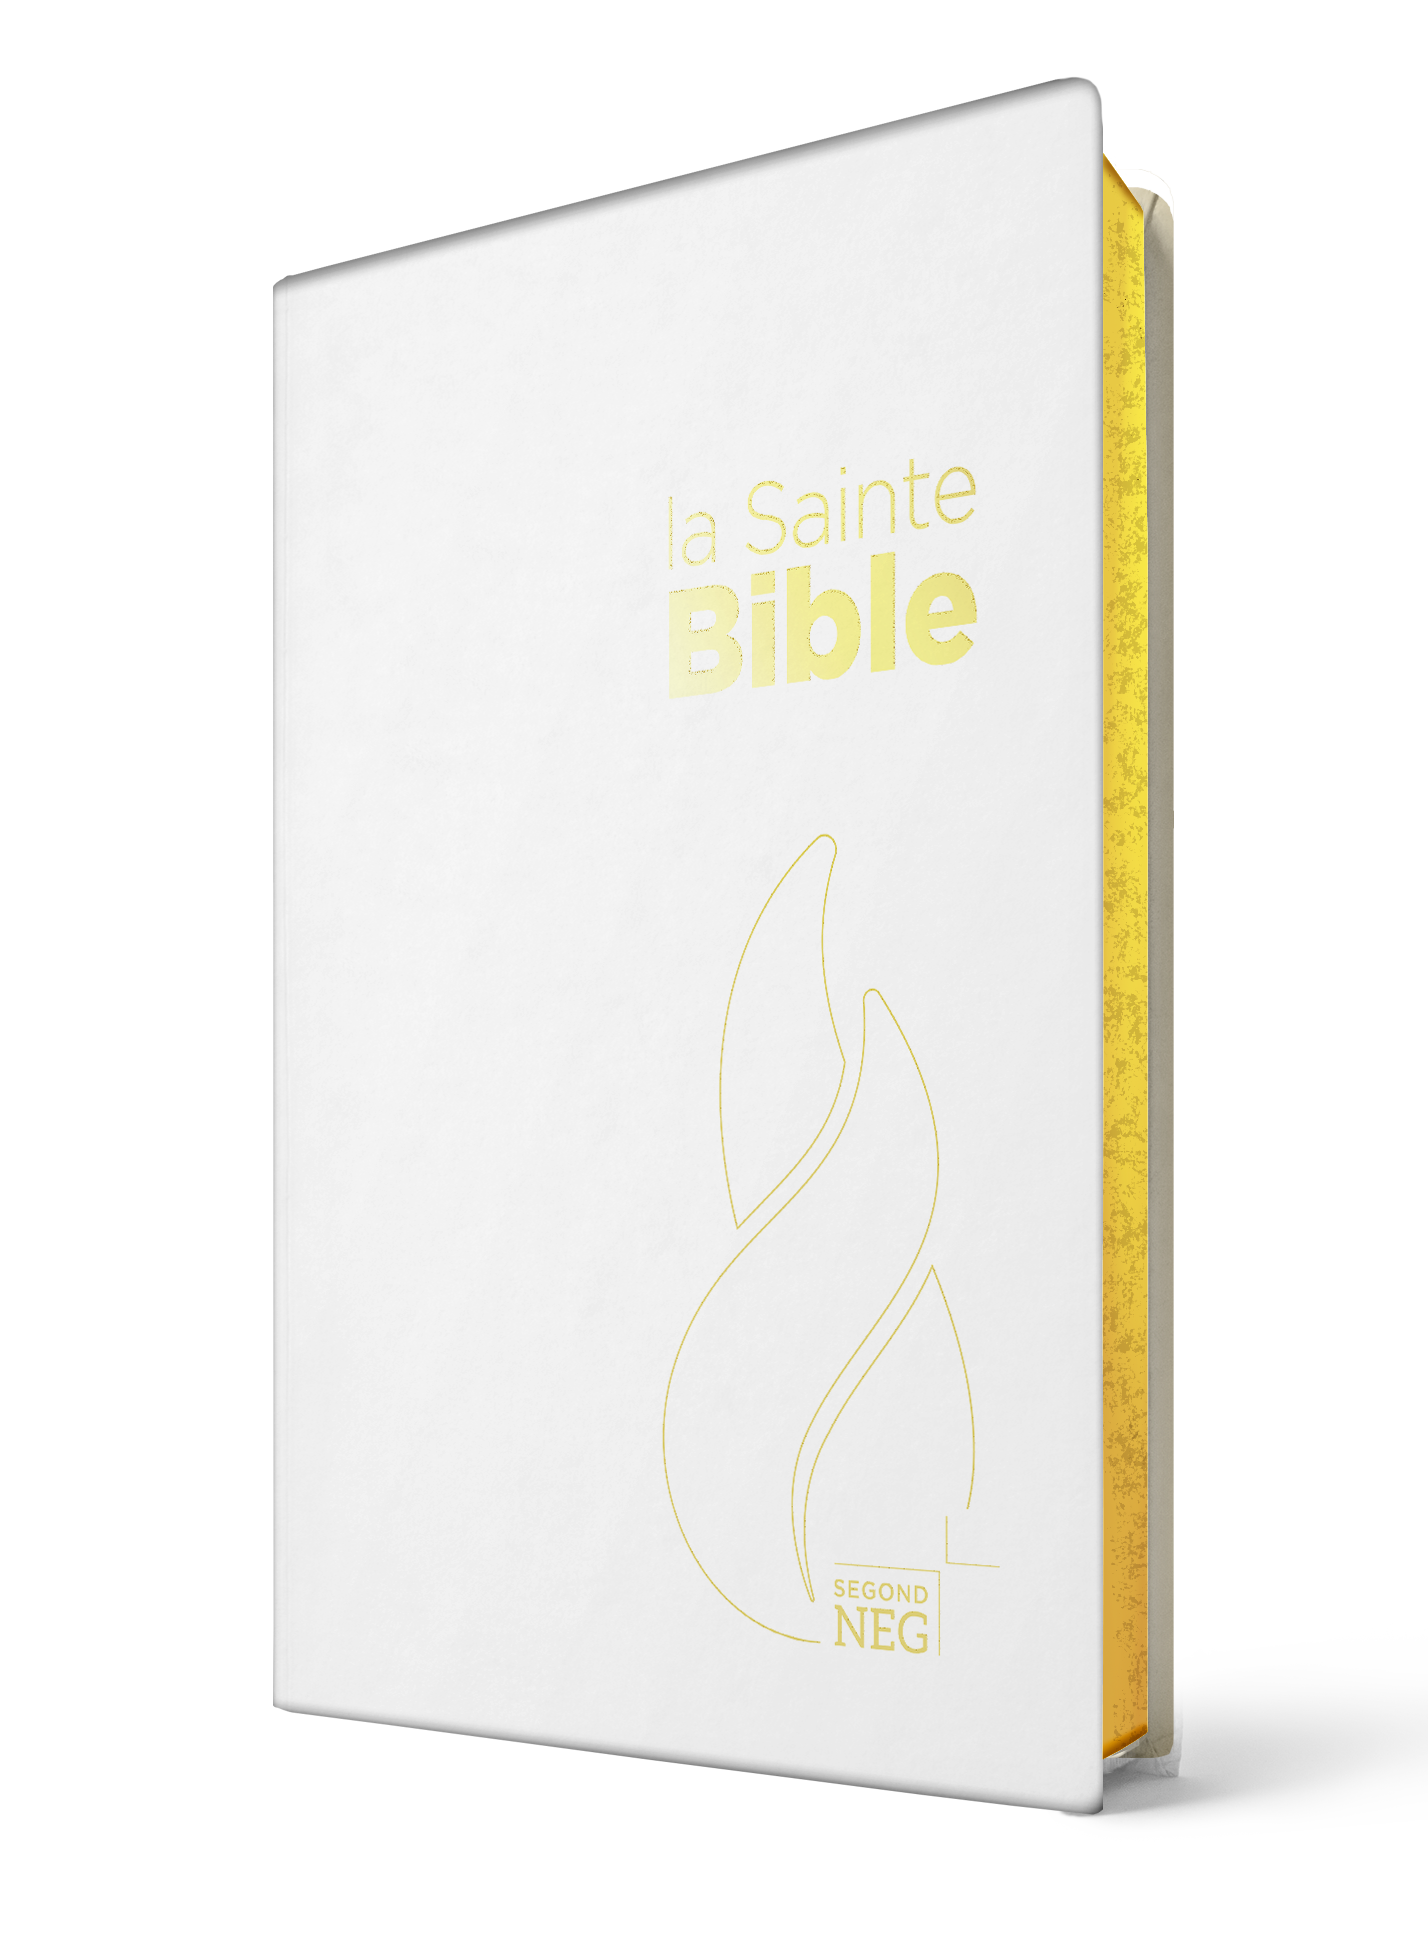 Bible Segond NEG compacte - couverture souple Vivella blanche, tranches or